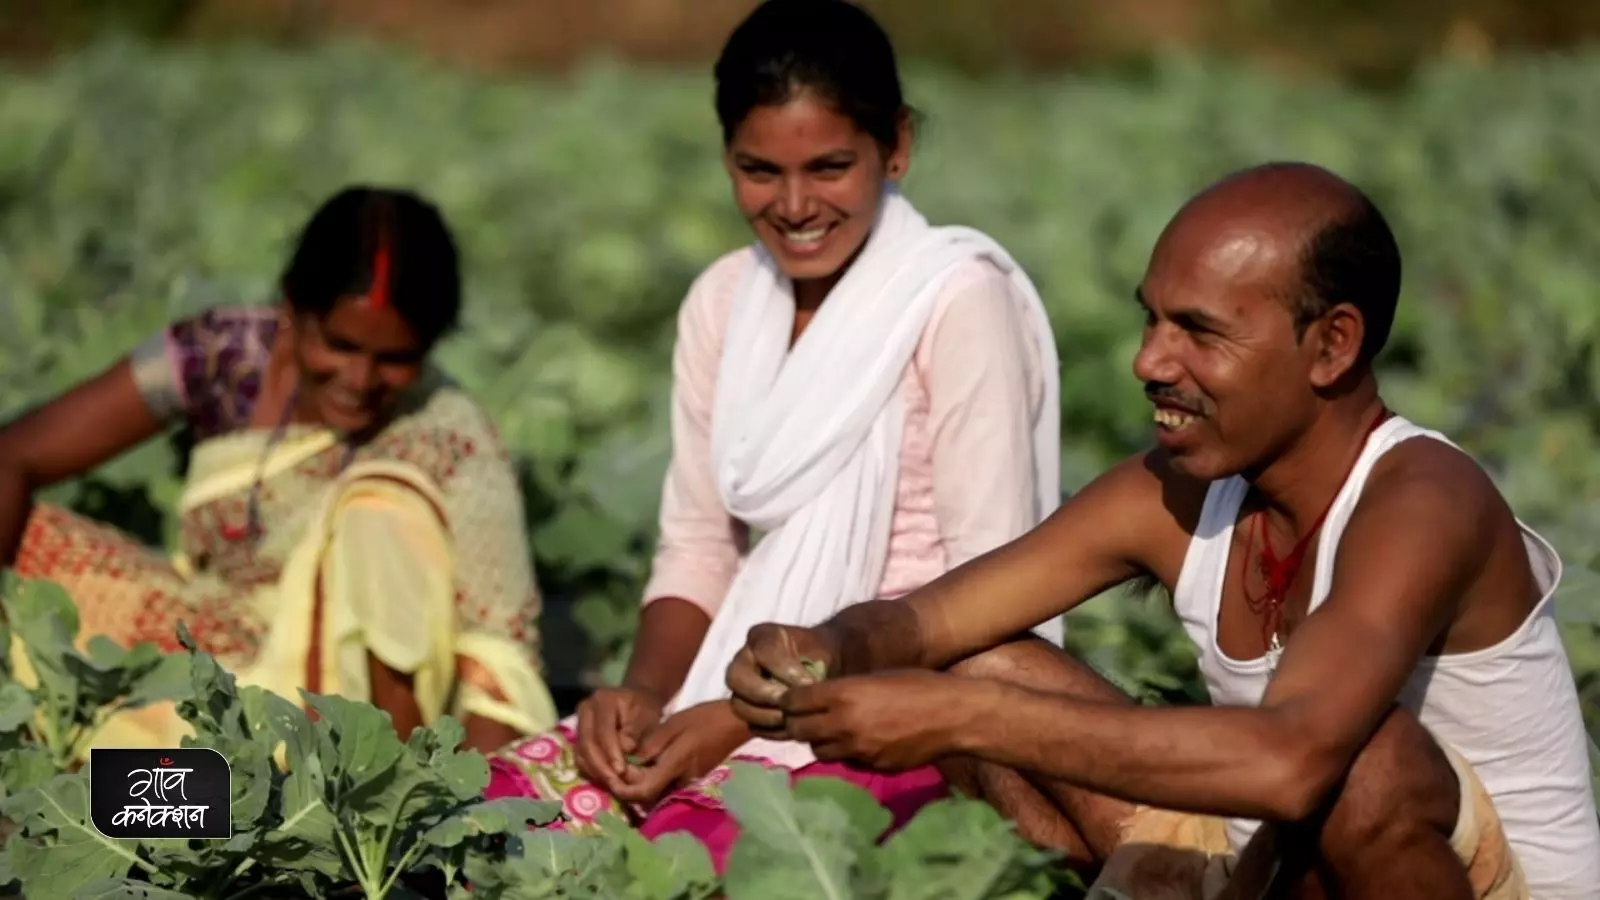 पीएम किसान योजना के 3 साल पूरे होने पर प्रधानमंत्री नरेंद्र मोदी ने क्या कहा? अगली किस्त से पहले कर लेें ये काम